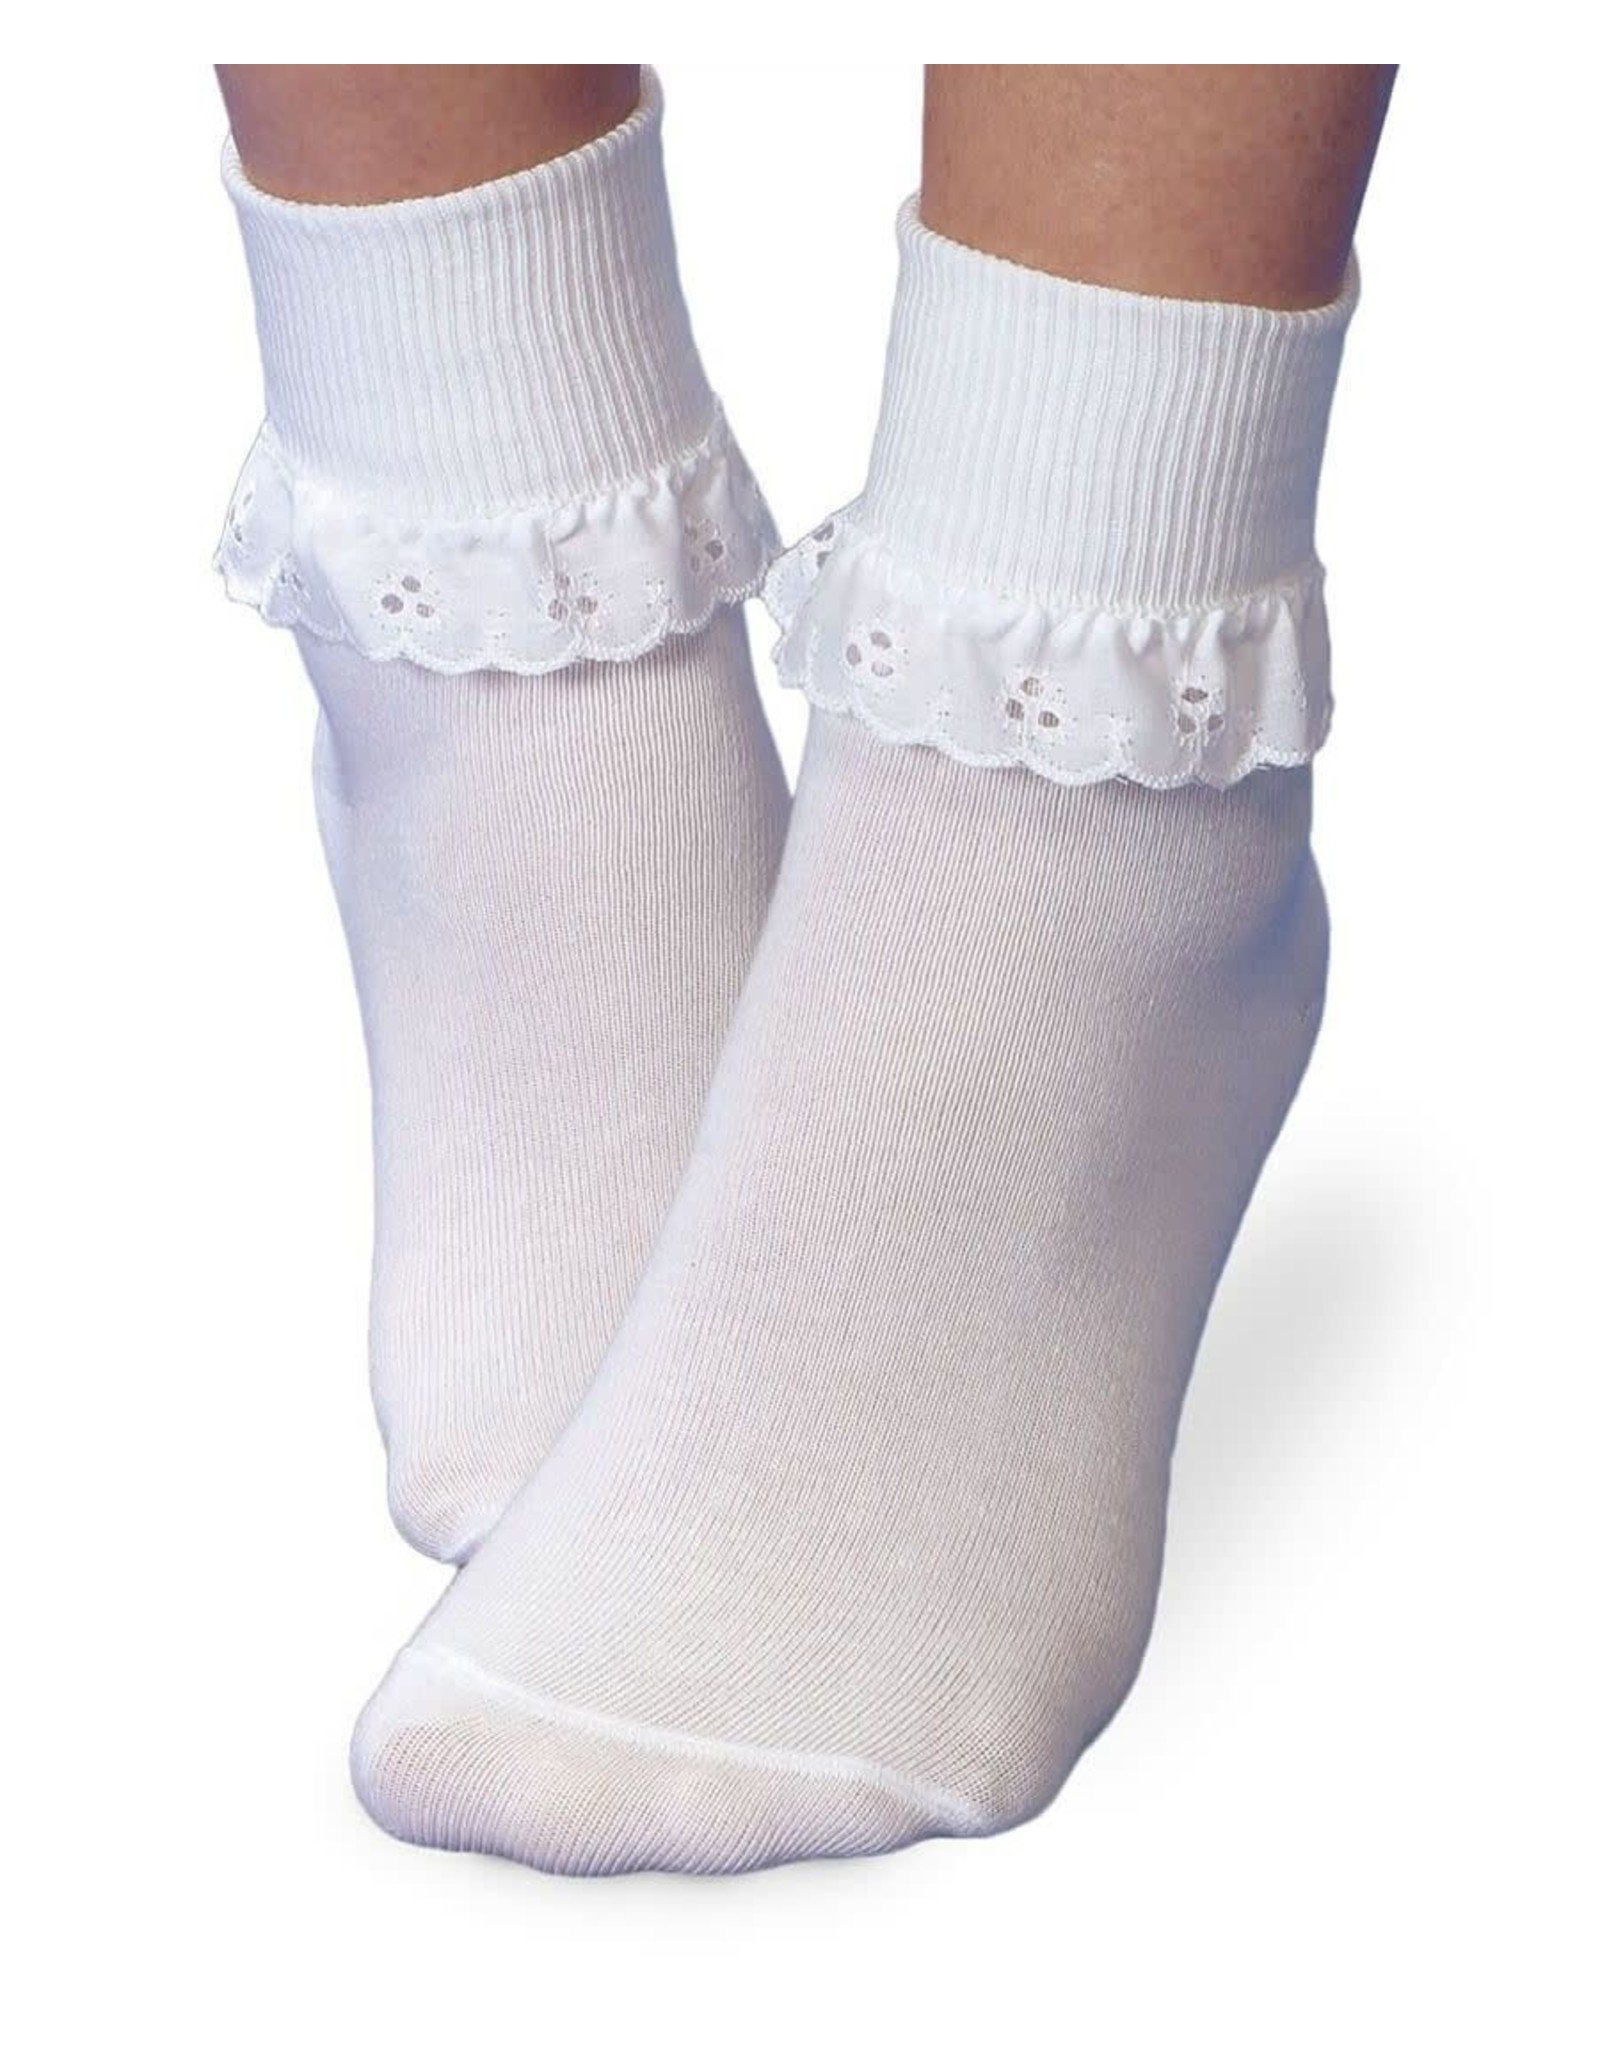 Jefferies- Eyelet Lace Ruffle Turn Cuff Socks: White